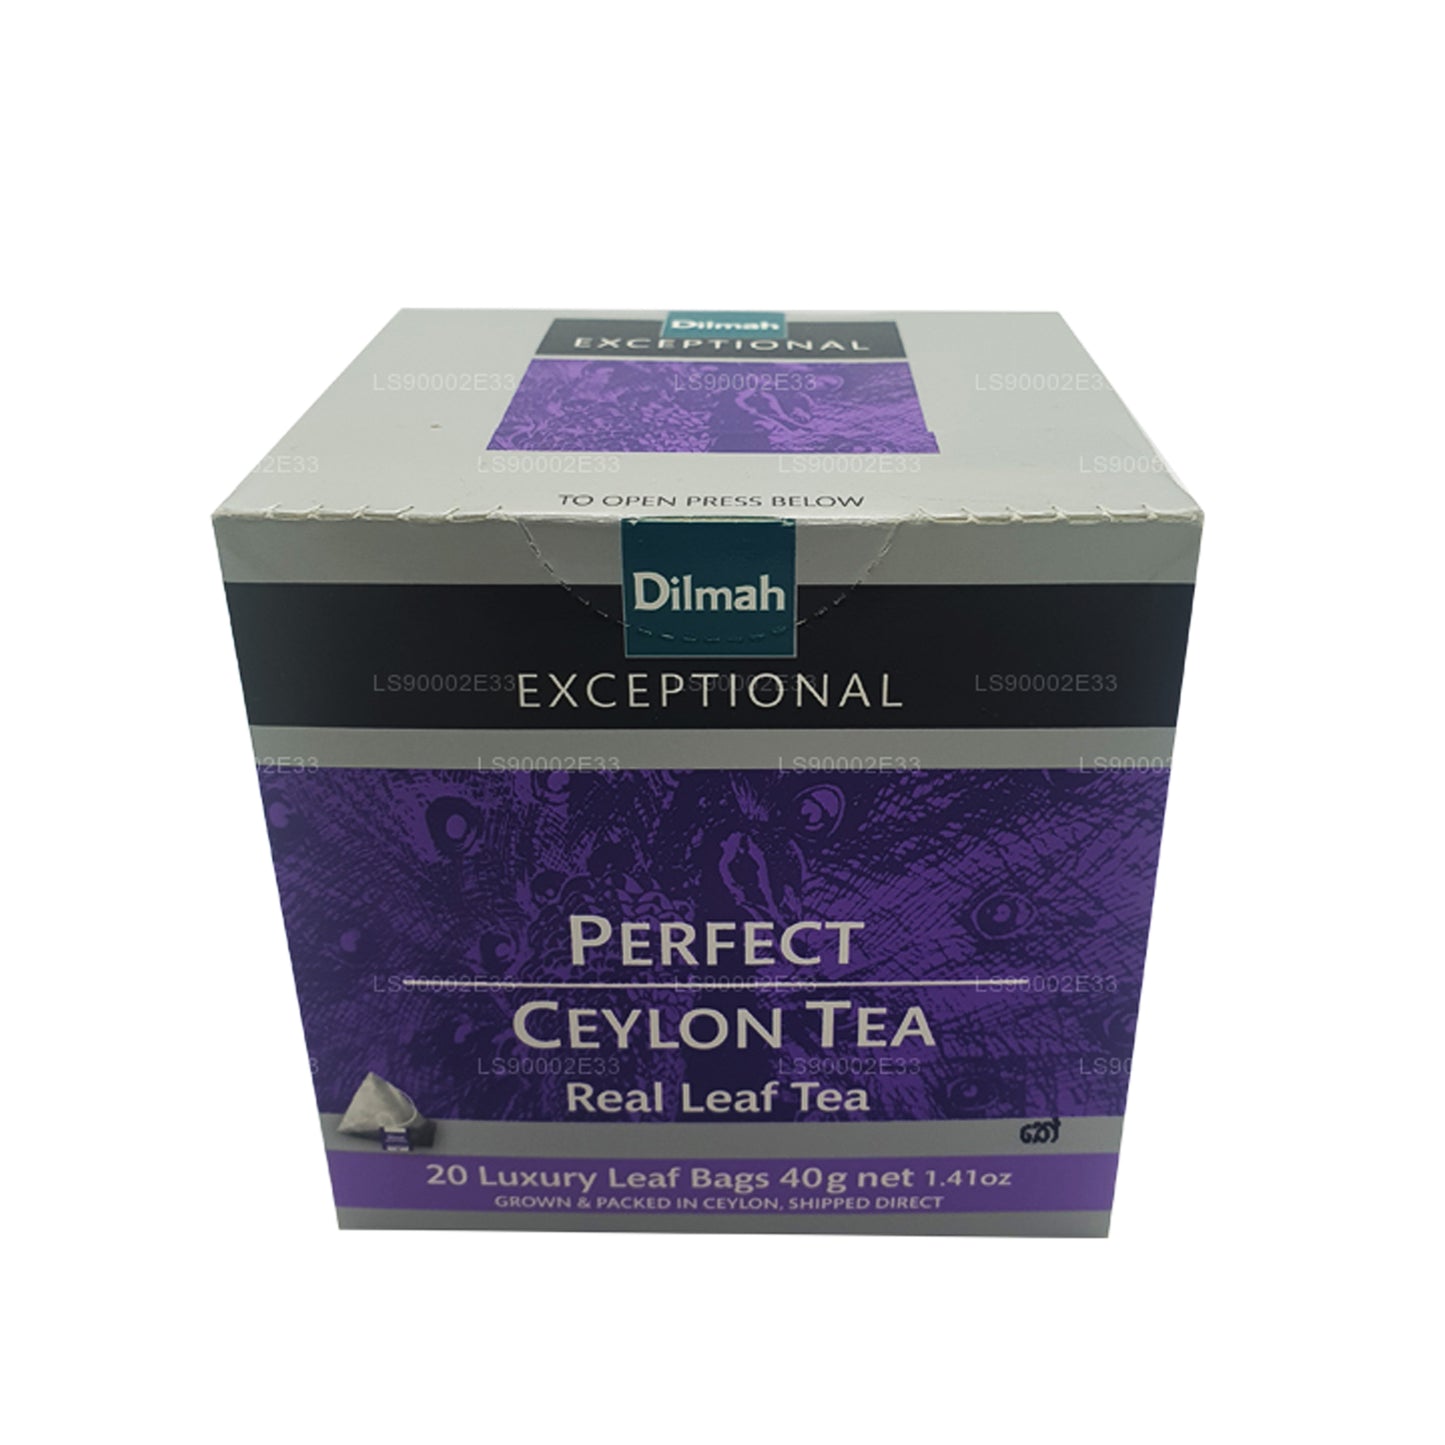 Dilmah uitzonderlijke perfecte Ceylon-thee met echte bladeren (40 g) zakjes met 20 tags